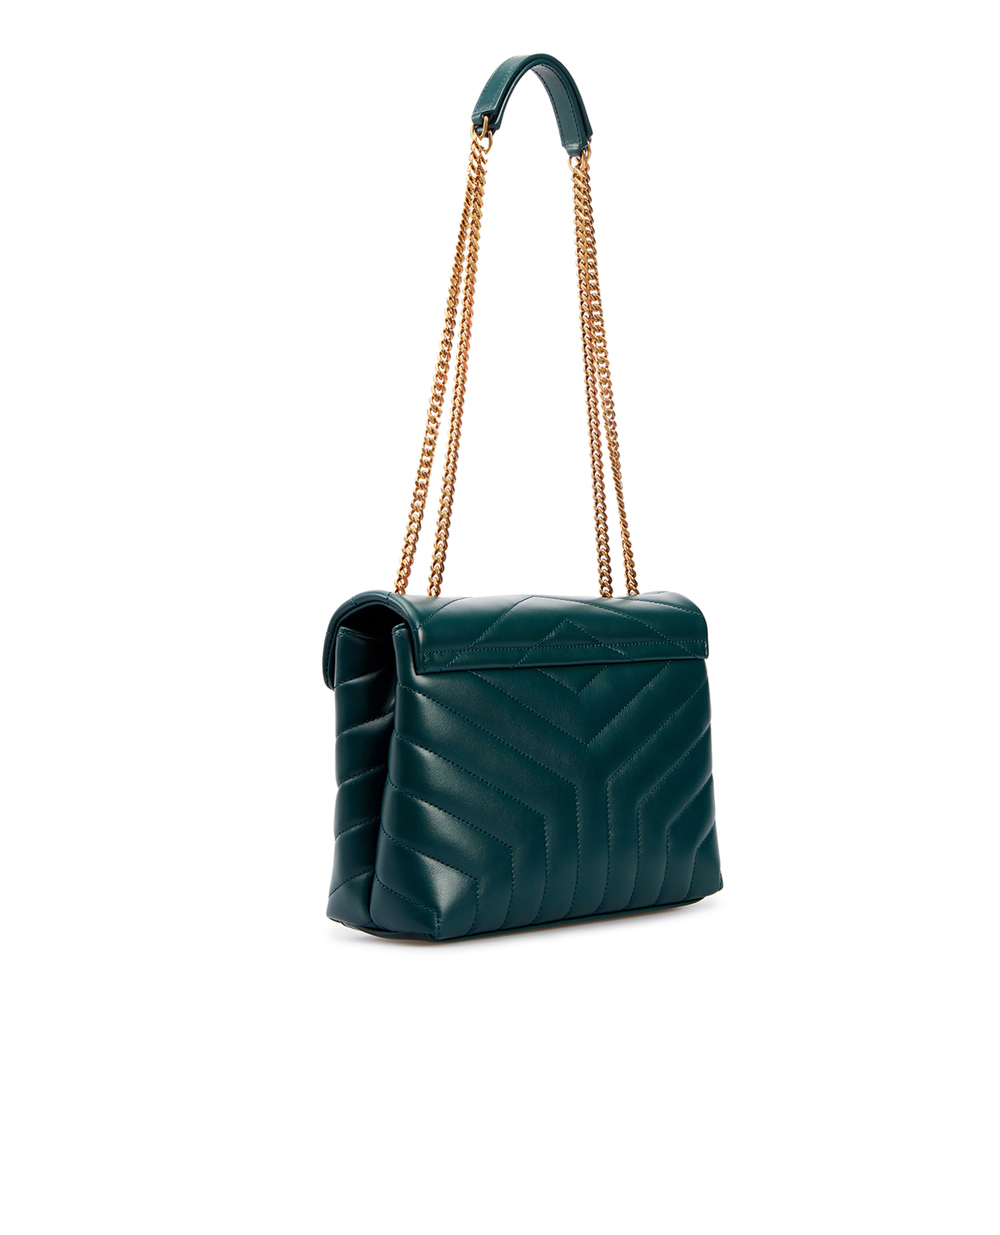 Кожаная сумка Loulou Small Saint Laurent 494699-DV727, зеленый цвет • Купить в интернет-магазине Kameron